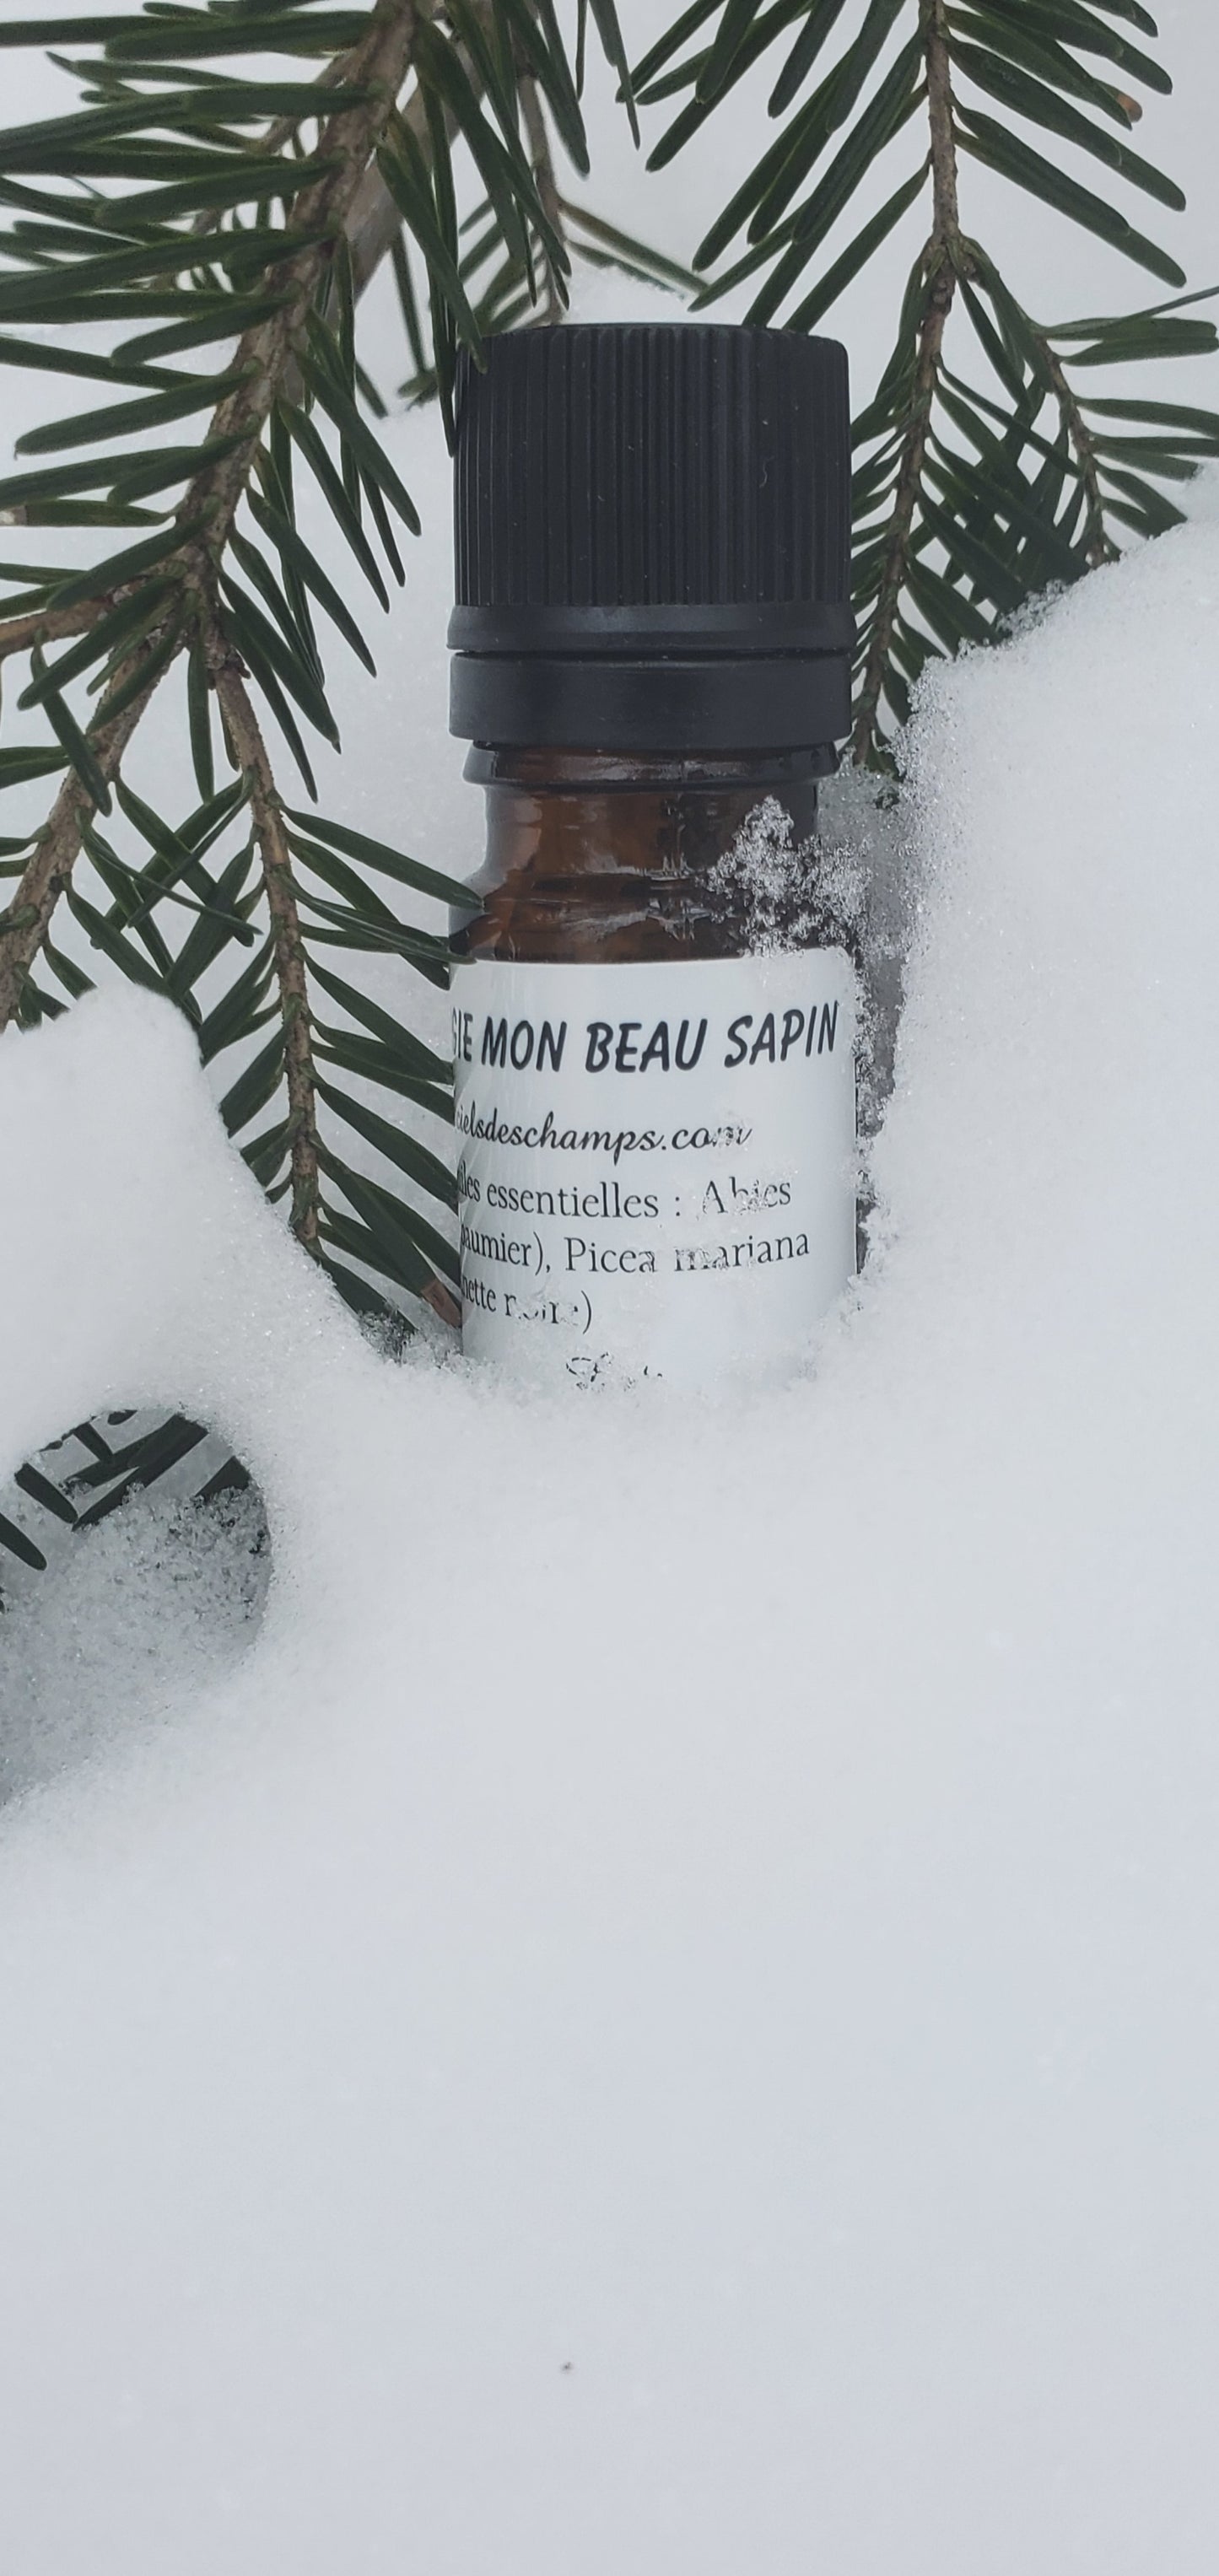 Synergie Mon Beau Sapin - pour purifier l'air - odeur des bois (mélange d'huiles essentielles de qualité) Les sens ciels des champs